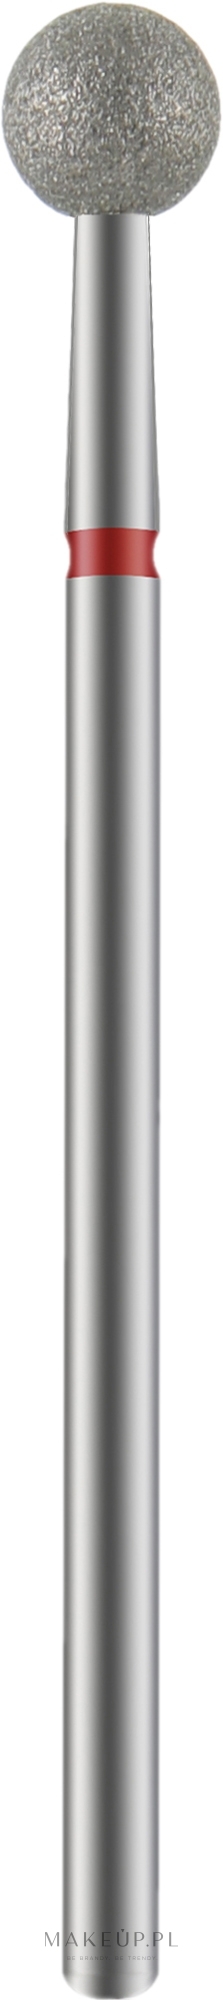 Frez diamentowy, kulka, czerwony, 5 mm - Staleks PRO Expert Diamond Nail Drill Bit Ball Red Head 5 mm — Zdjęcie 1 szt.